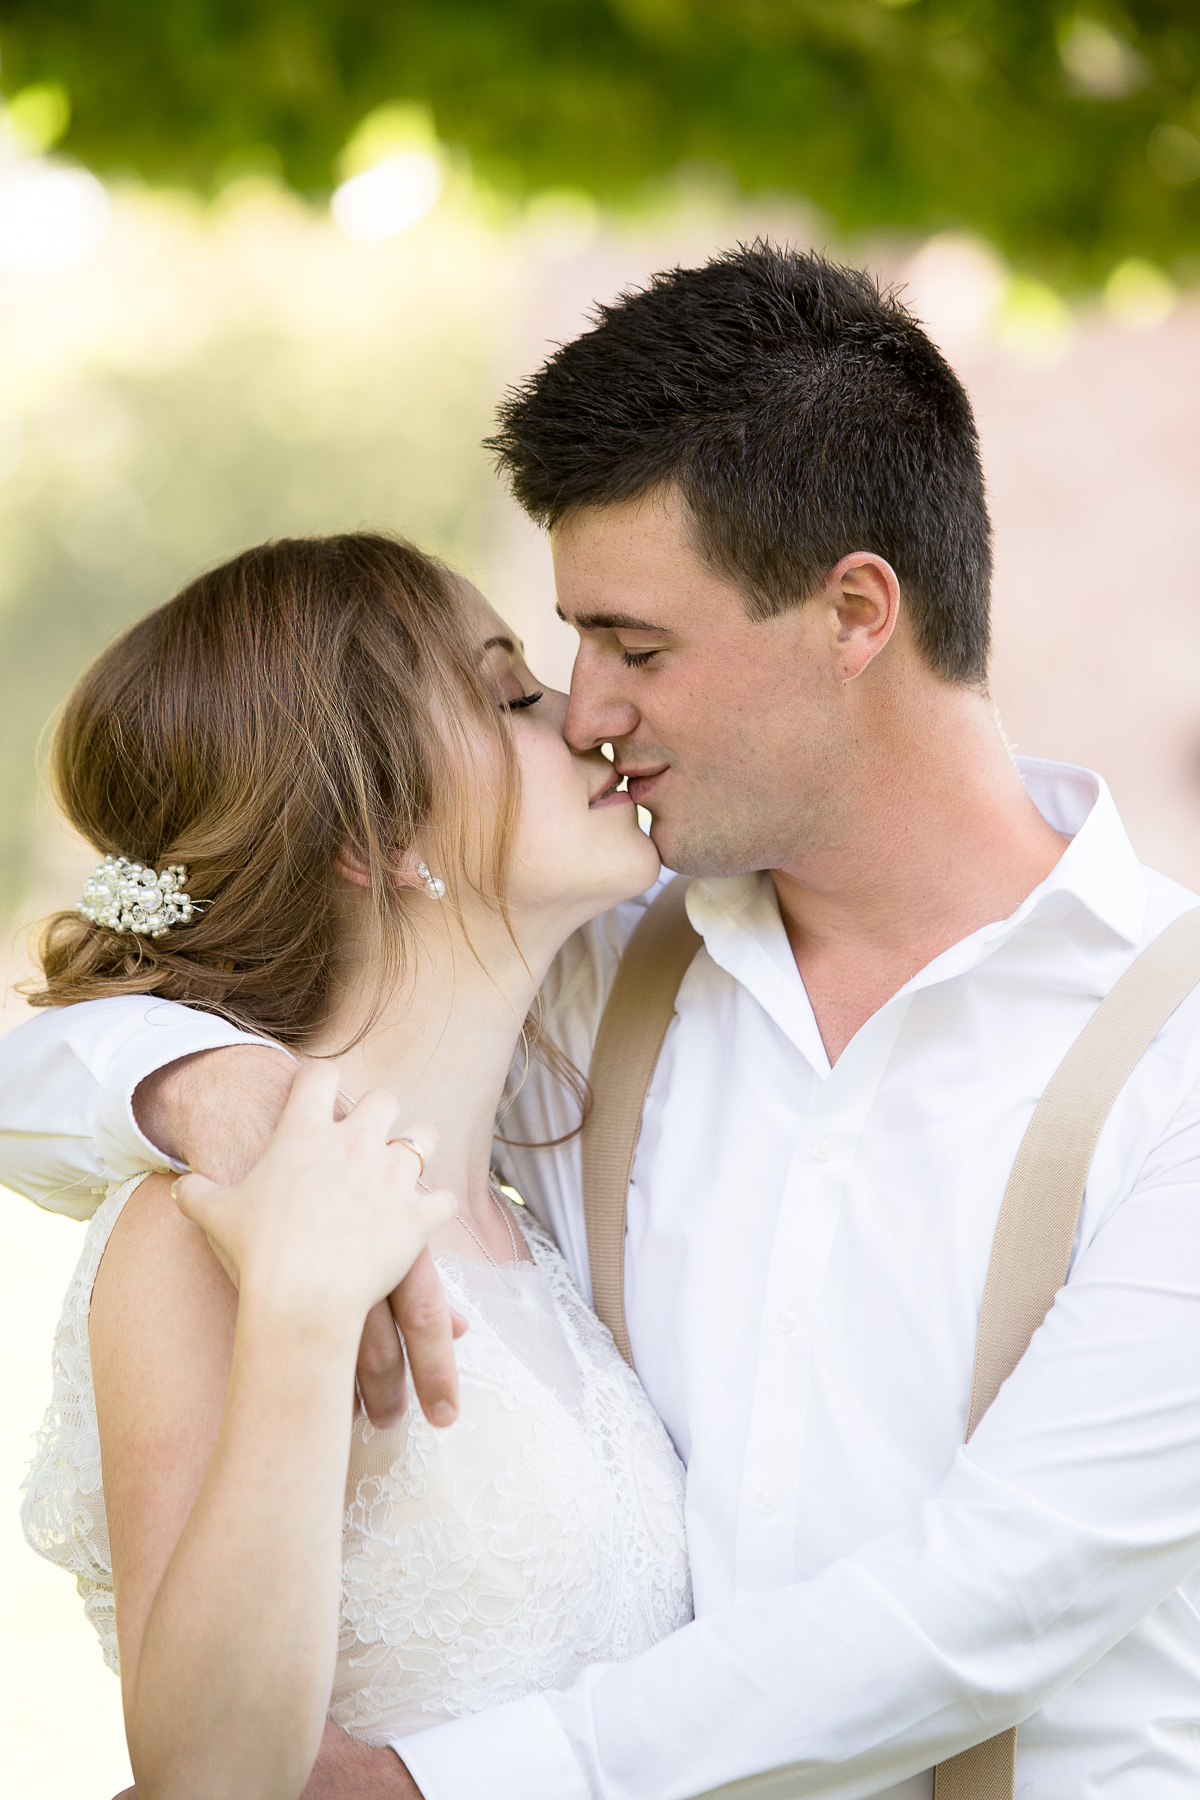 Ein Hochzeitspaar küsst sich sinnlich. Währenddessen umarmt der Bräutigam die Braut. Sie erwidert seine Umarmung, indem sie an seiner Hand fasst.